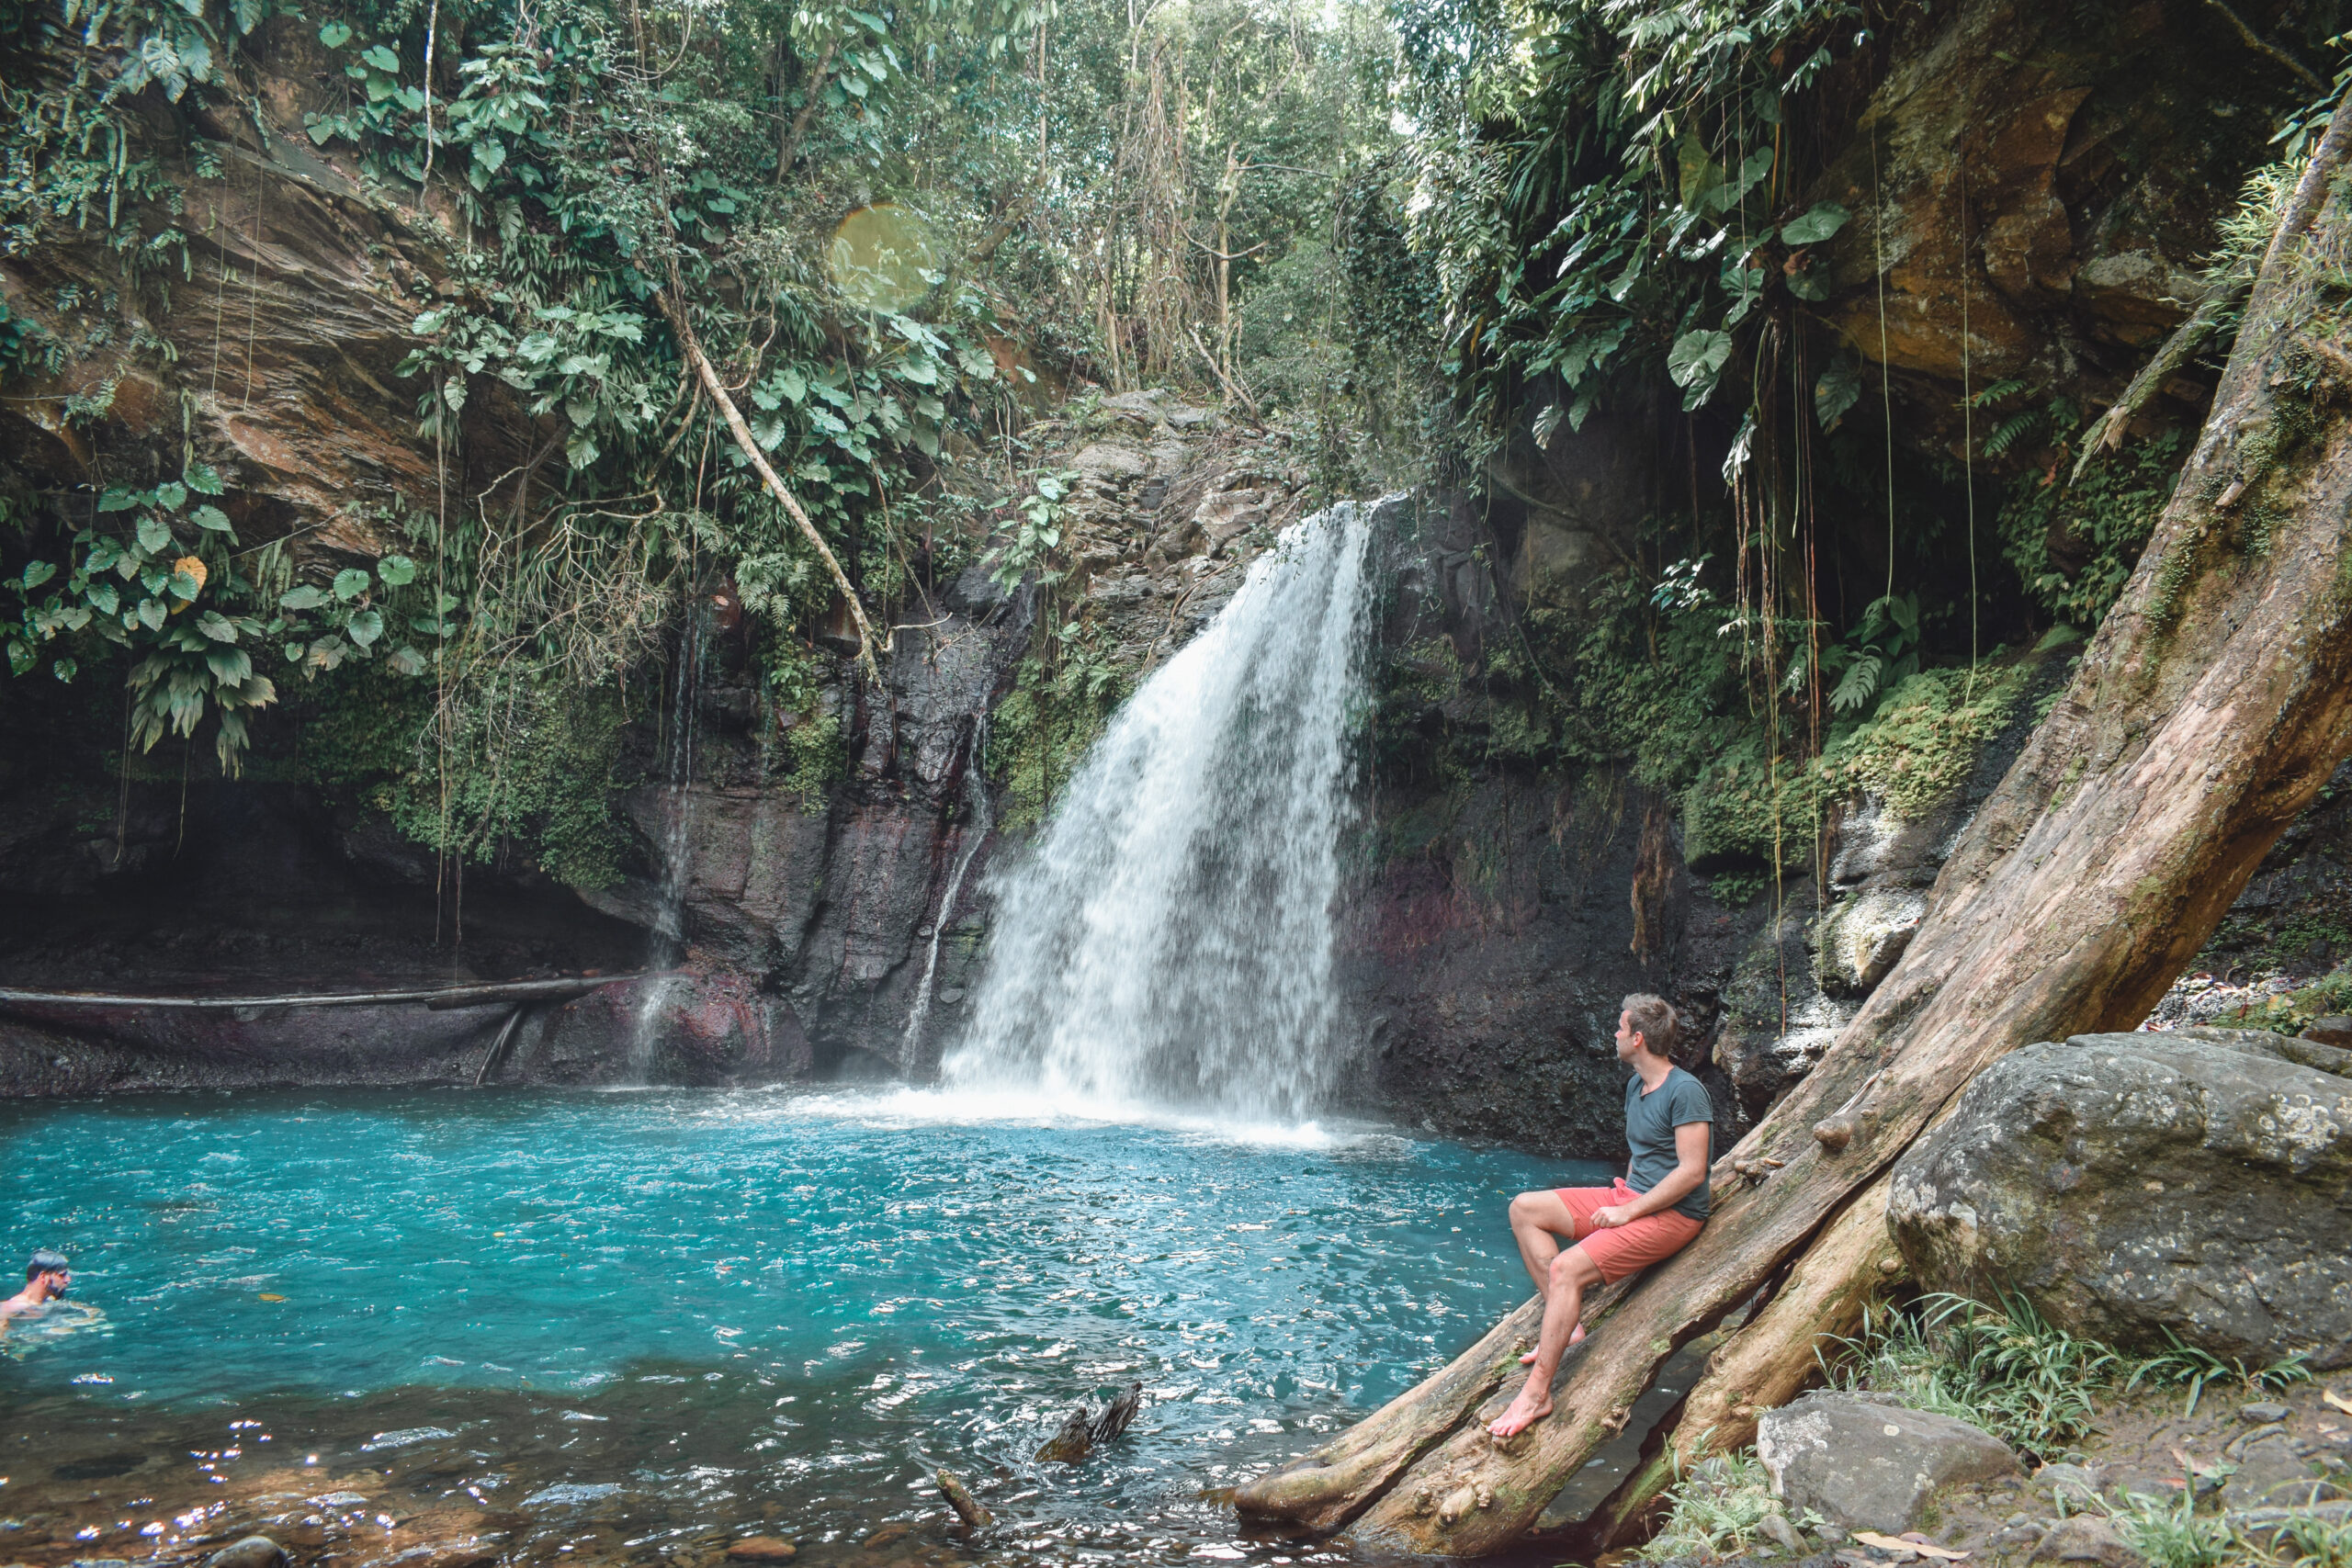 Guadeloupe waterfall